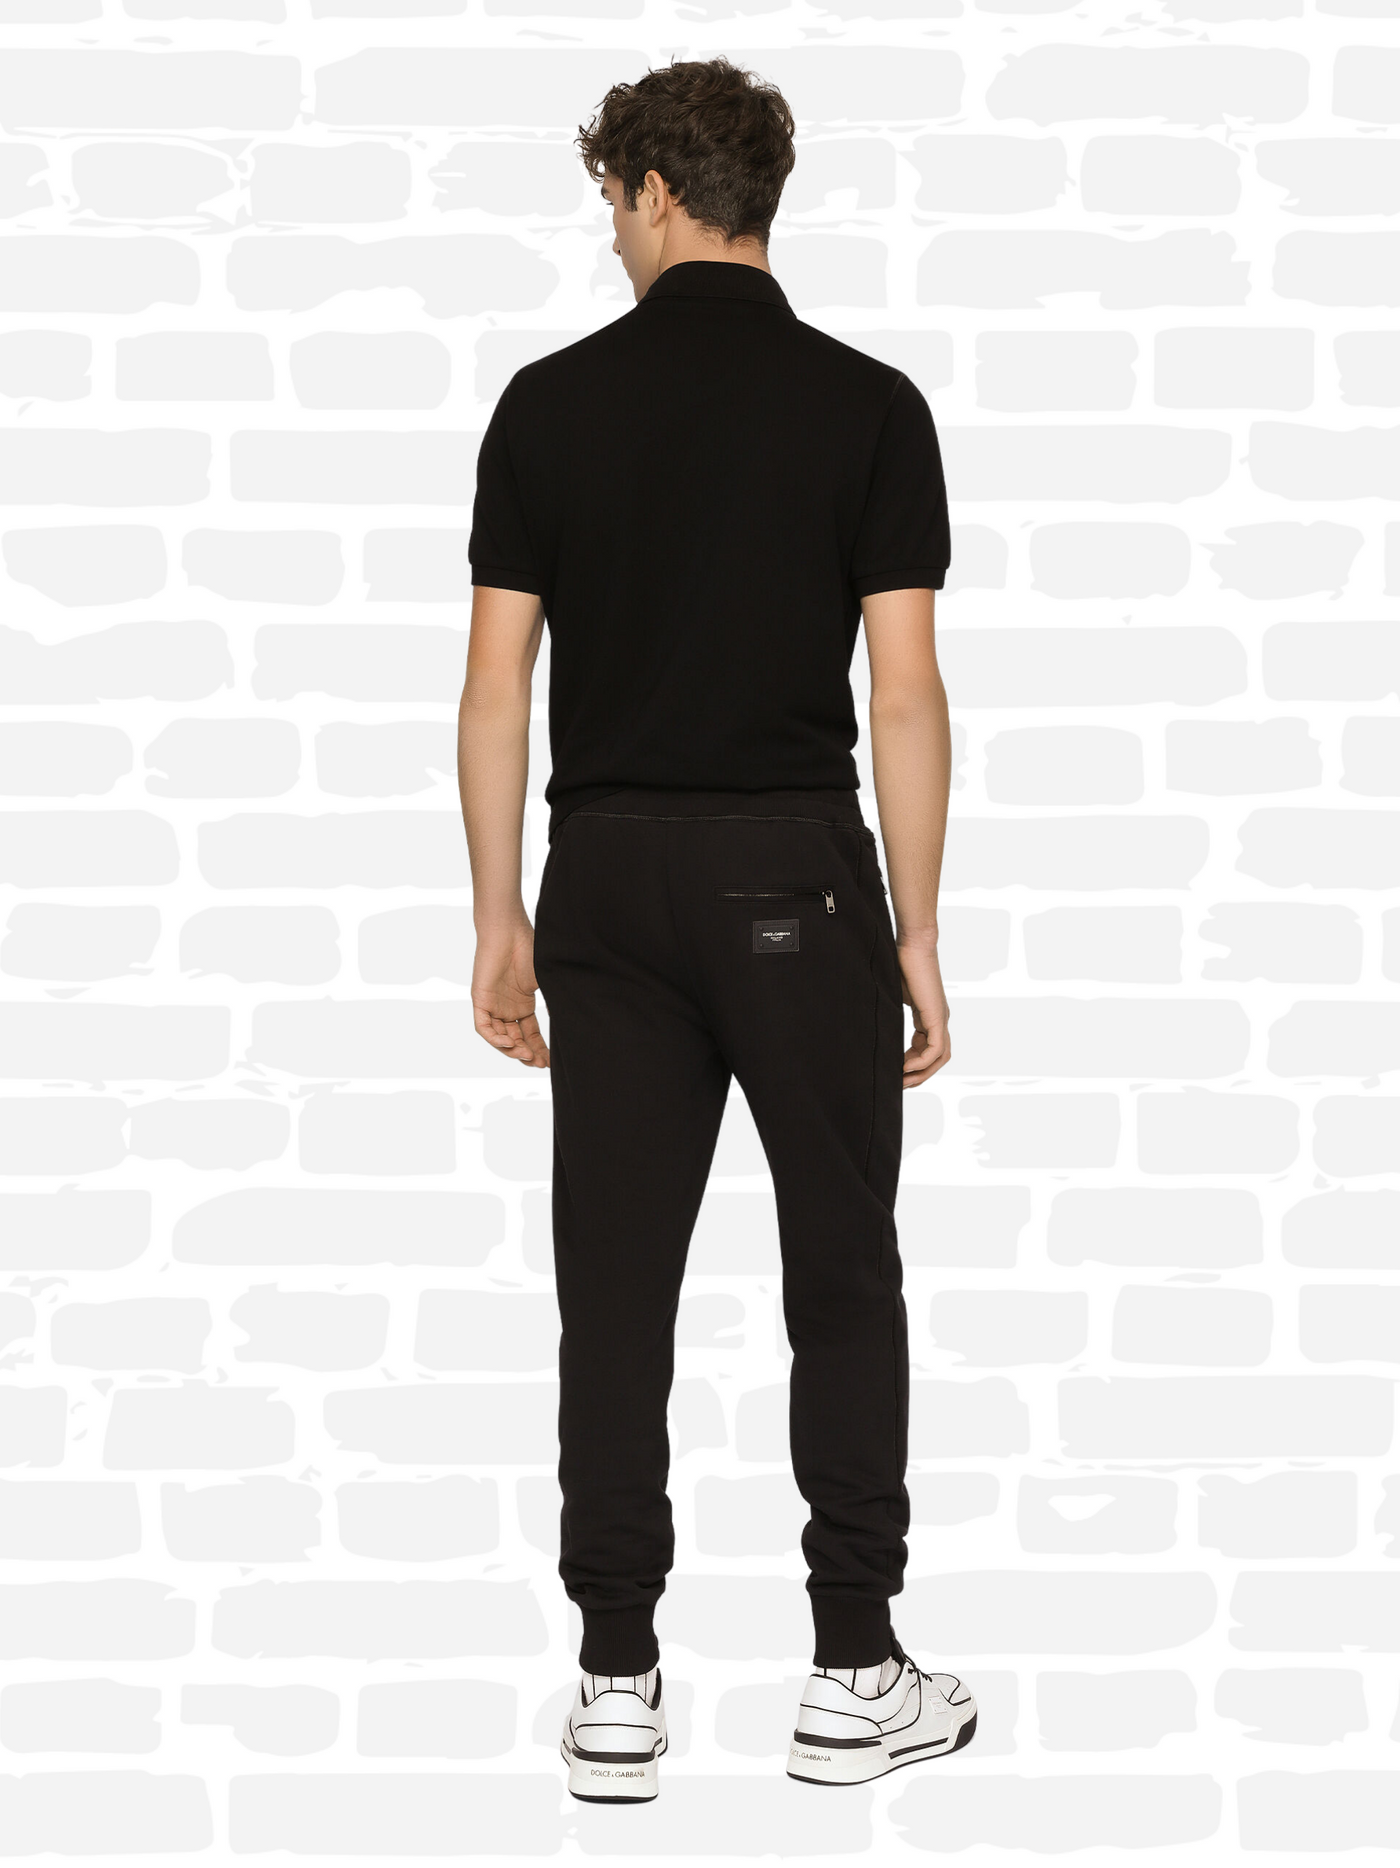 דולצ'ה גאבנה מכנסיים צבע שחור Jersey jogging pants